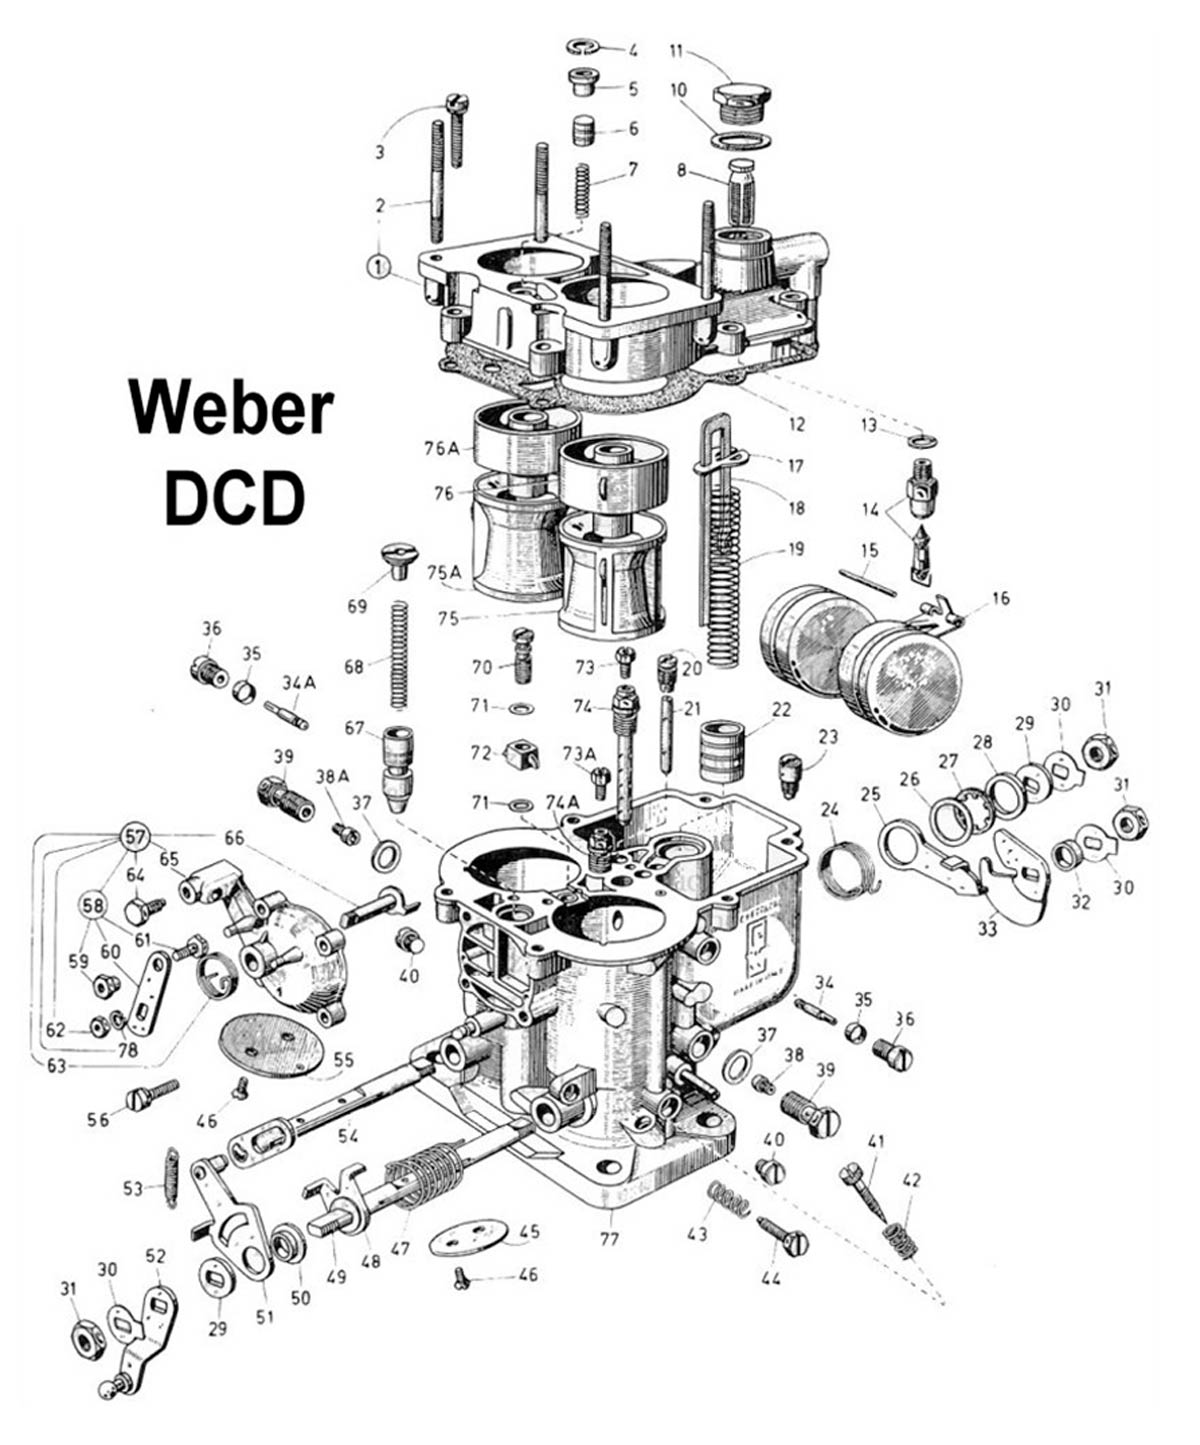 Weber DCD opengewerkt